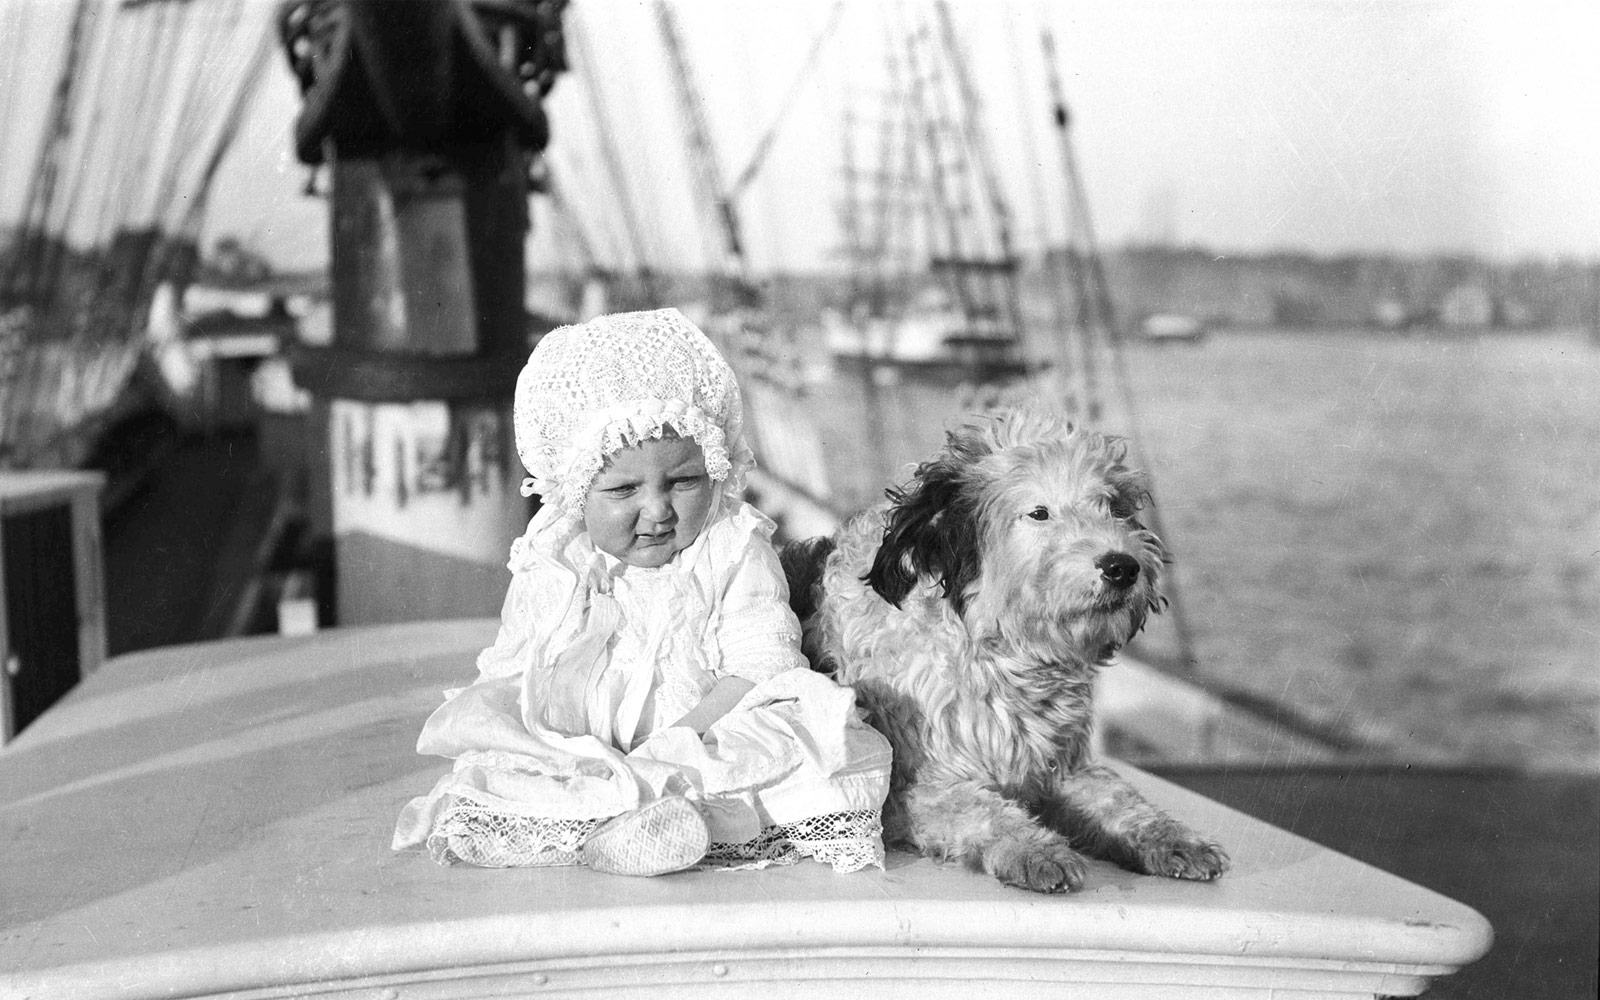 Un bebè i un gos en un vaixell de vela. Sydney, c. 1910 | Samuel J. Hood, Australian National Maritime Museum | Sense restriccions conegudes de drets d’autor